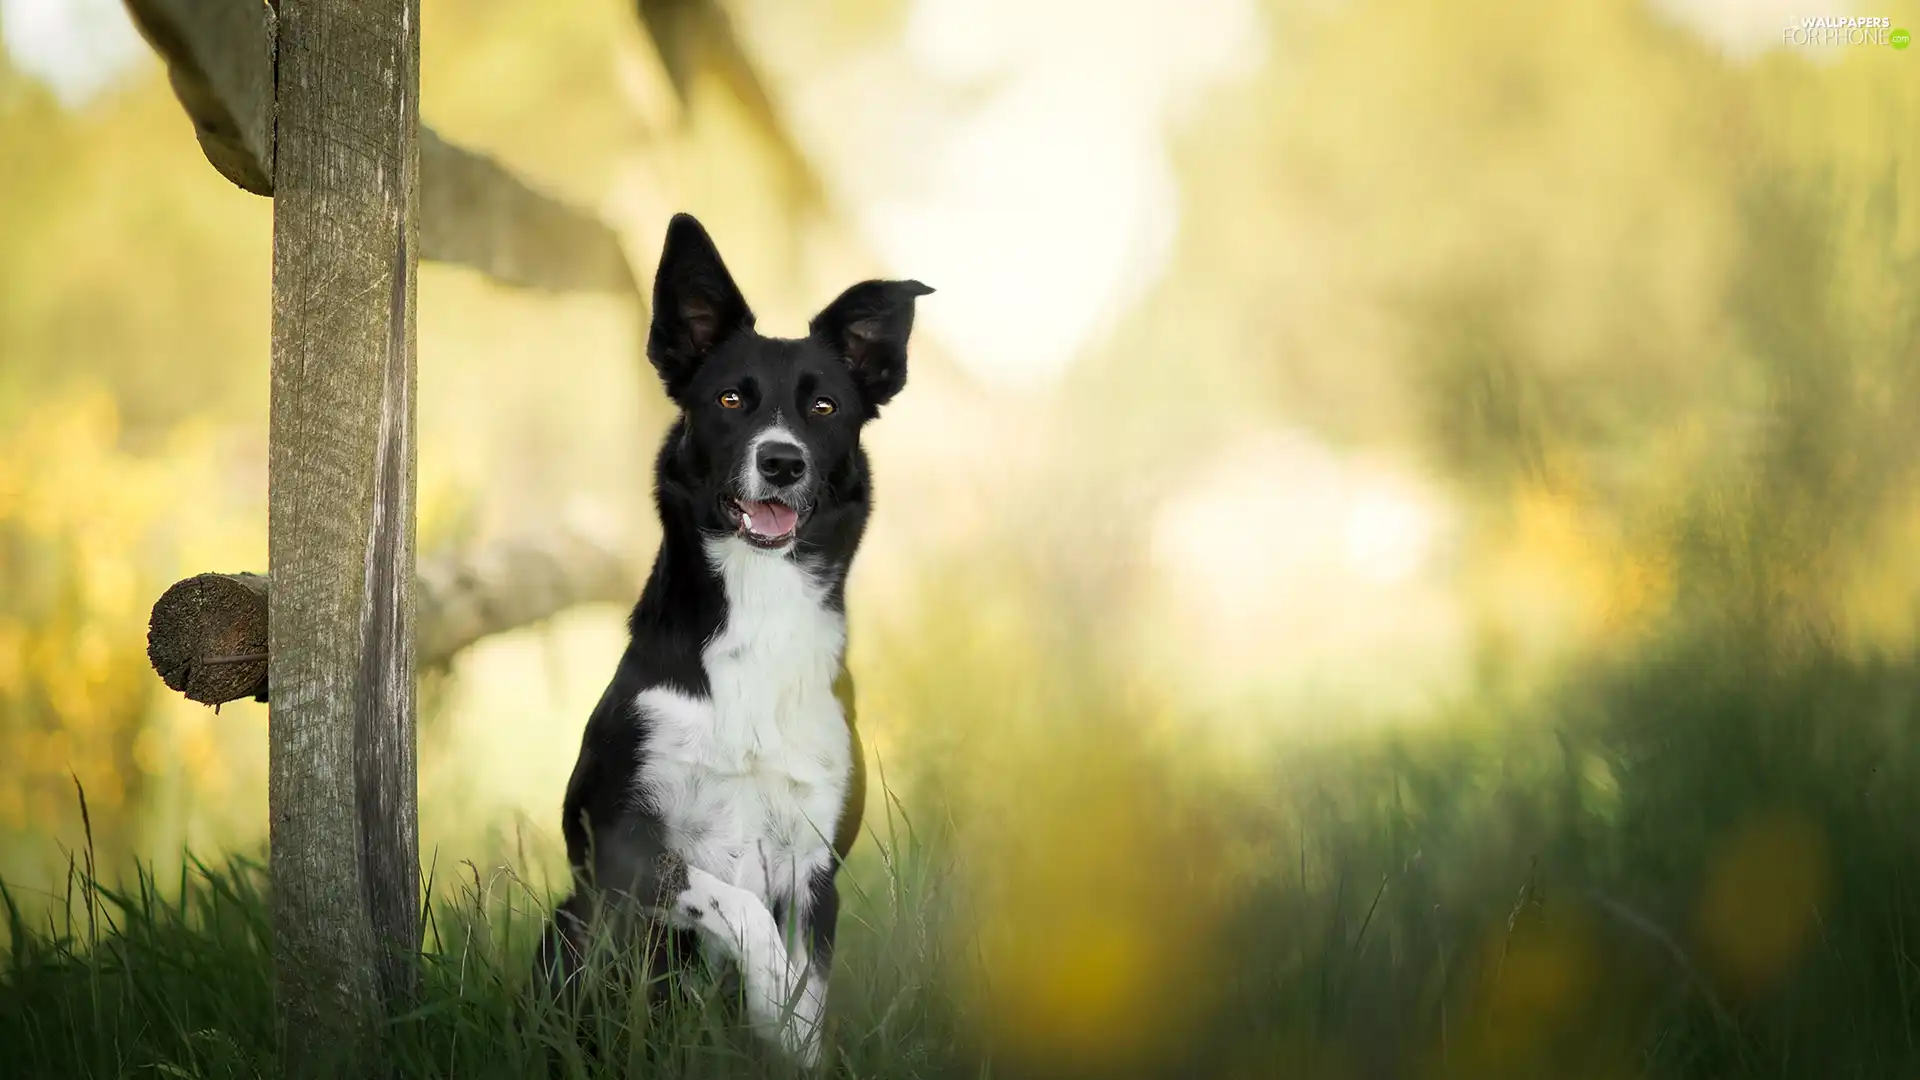 Fance, dog, fuzzy, background, grass, Border Collie